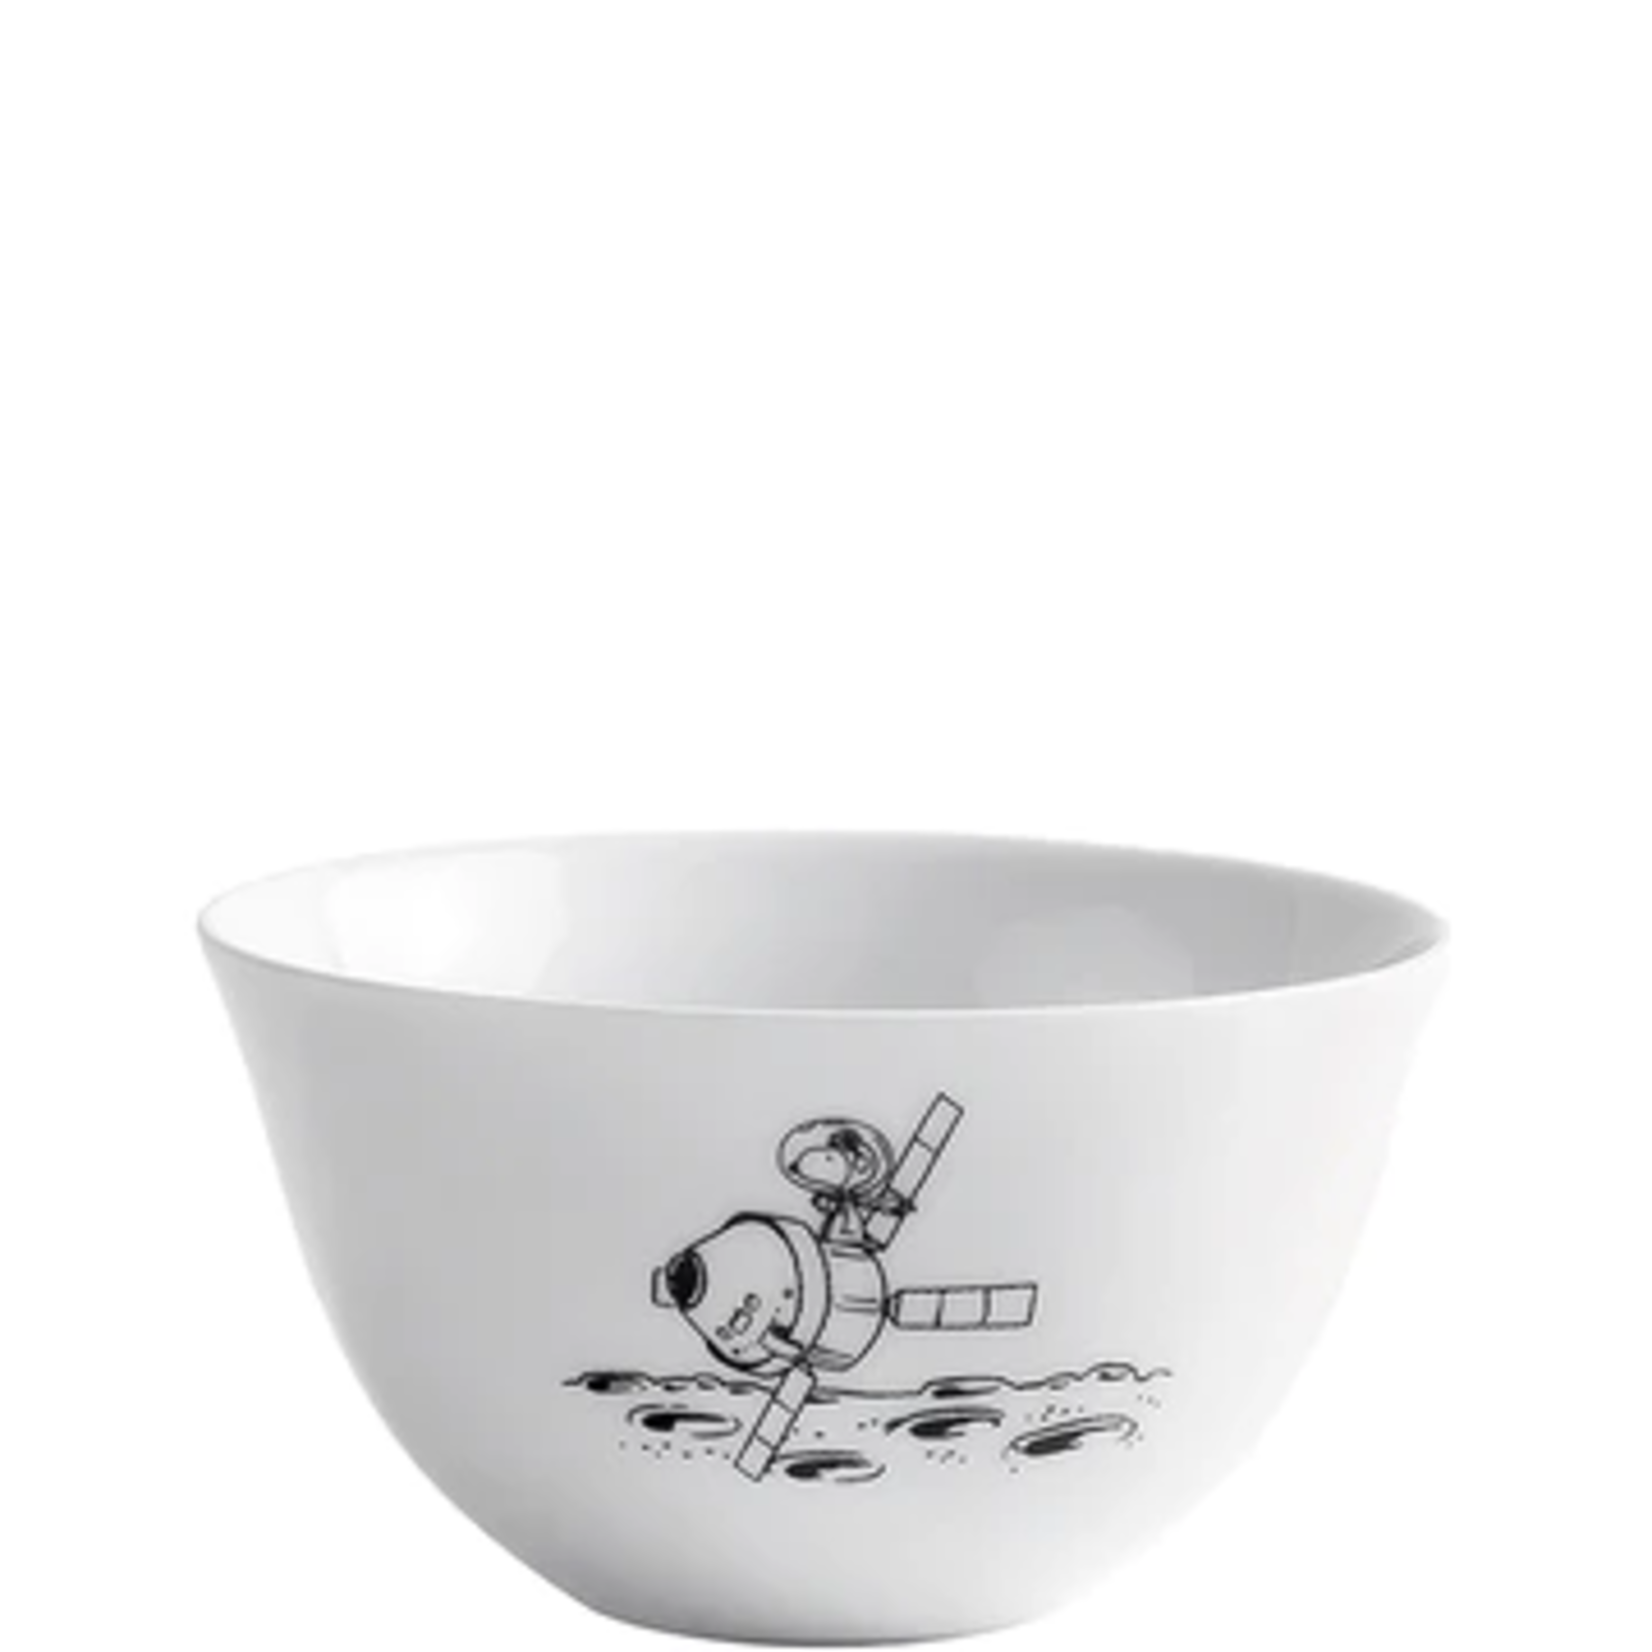 Diverse Merken Snoopy Servies 500 ml bowl Snoopy Peanuts Space Kahla 50982-schaaltje